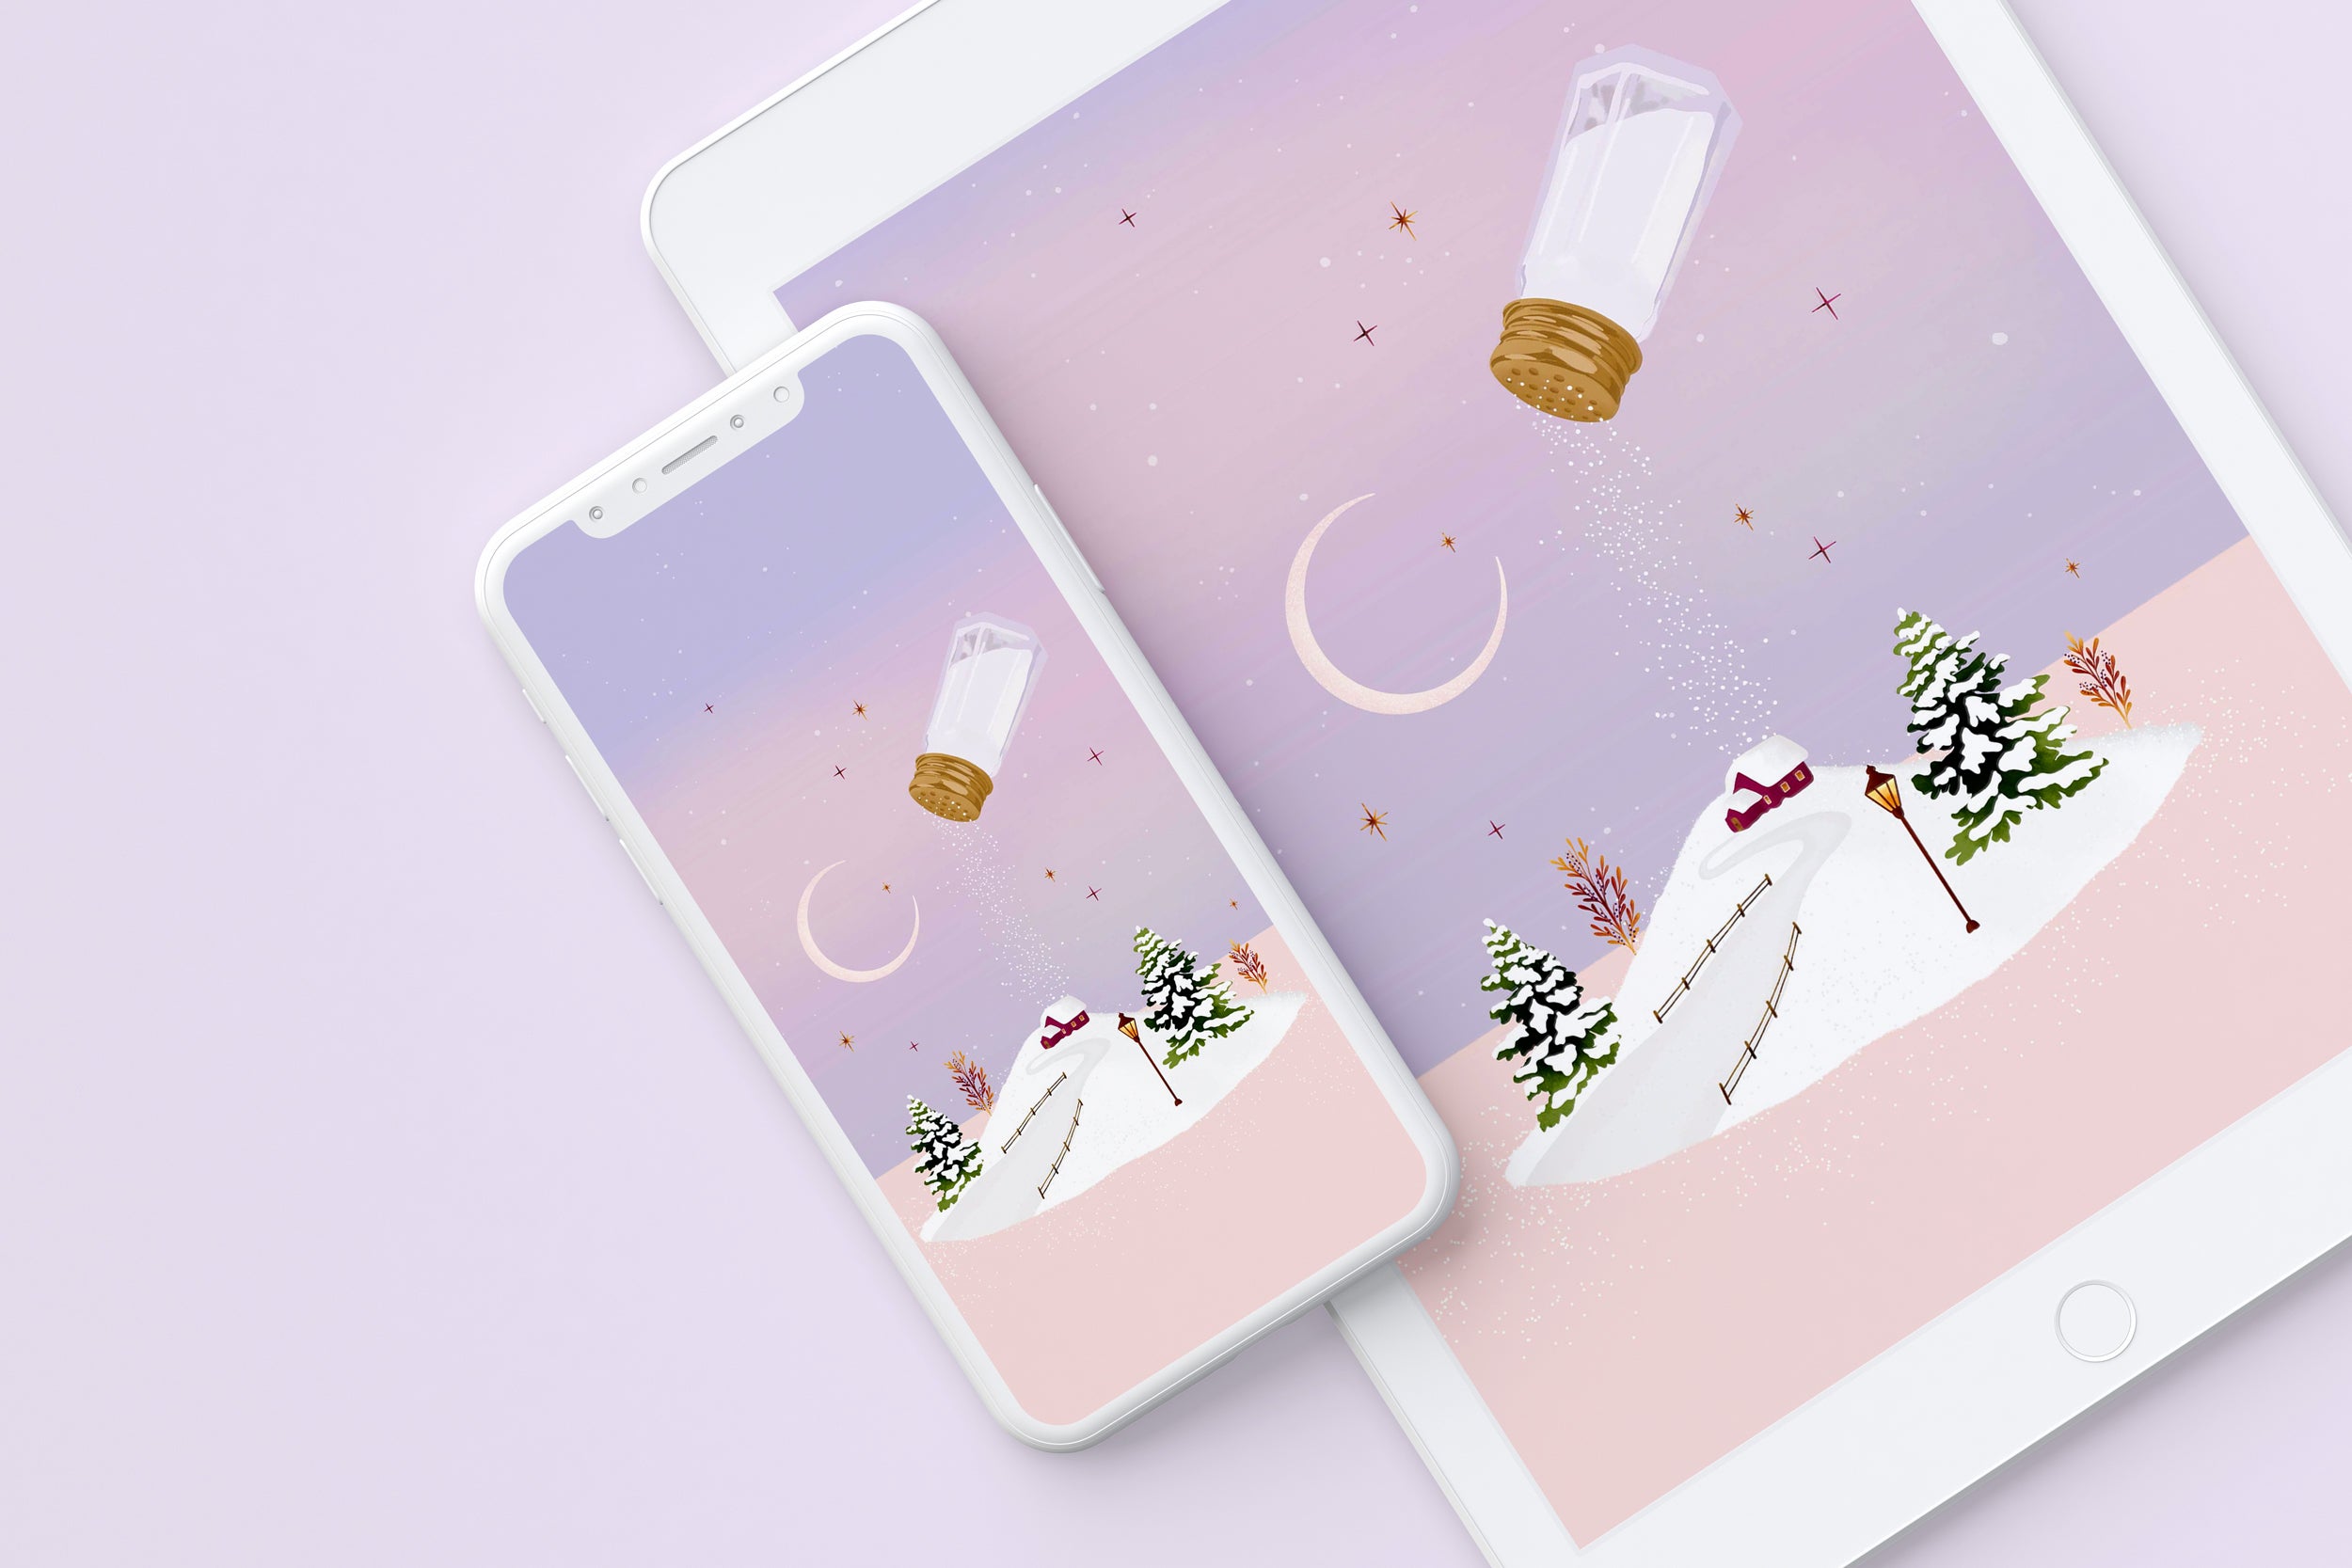 Salt shaker winter festive desktop, phone and tablet wallpaper